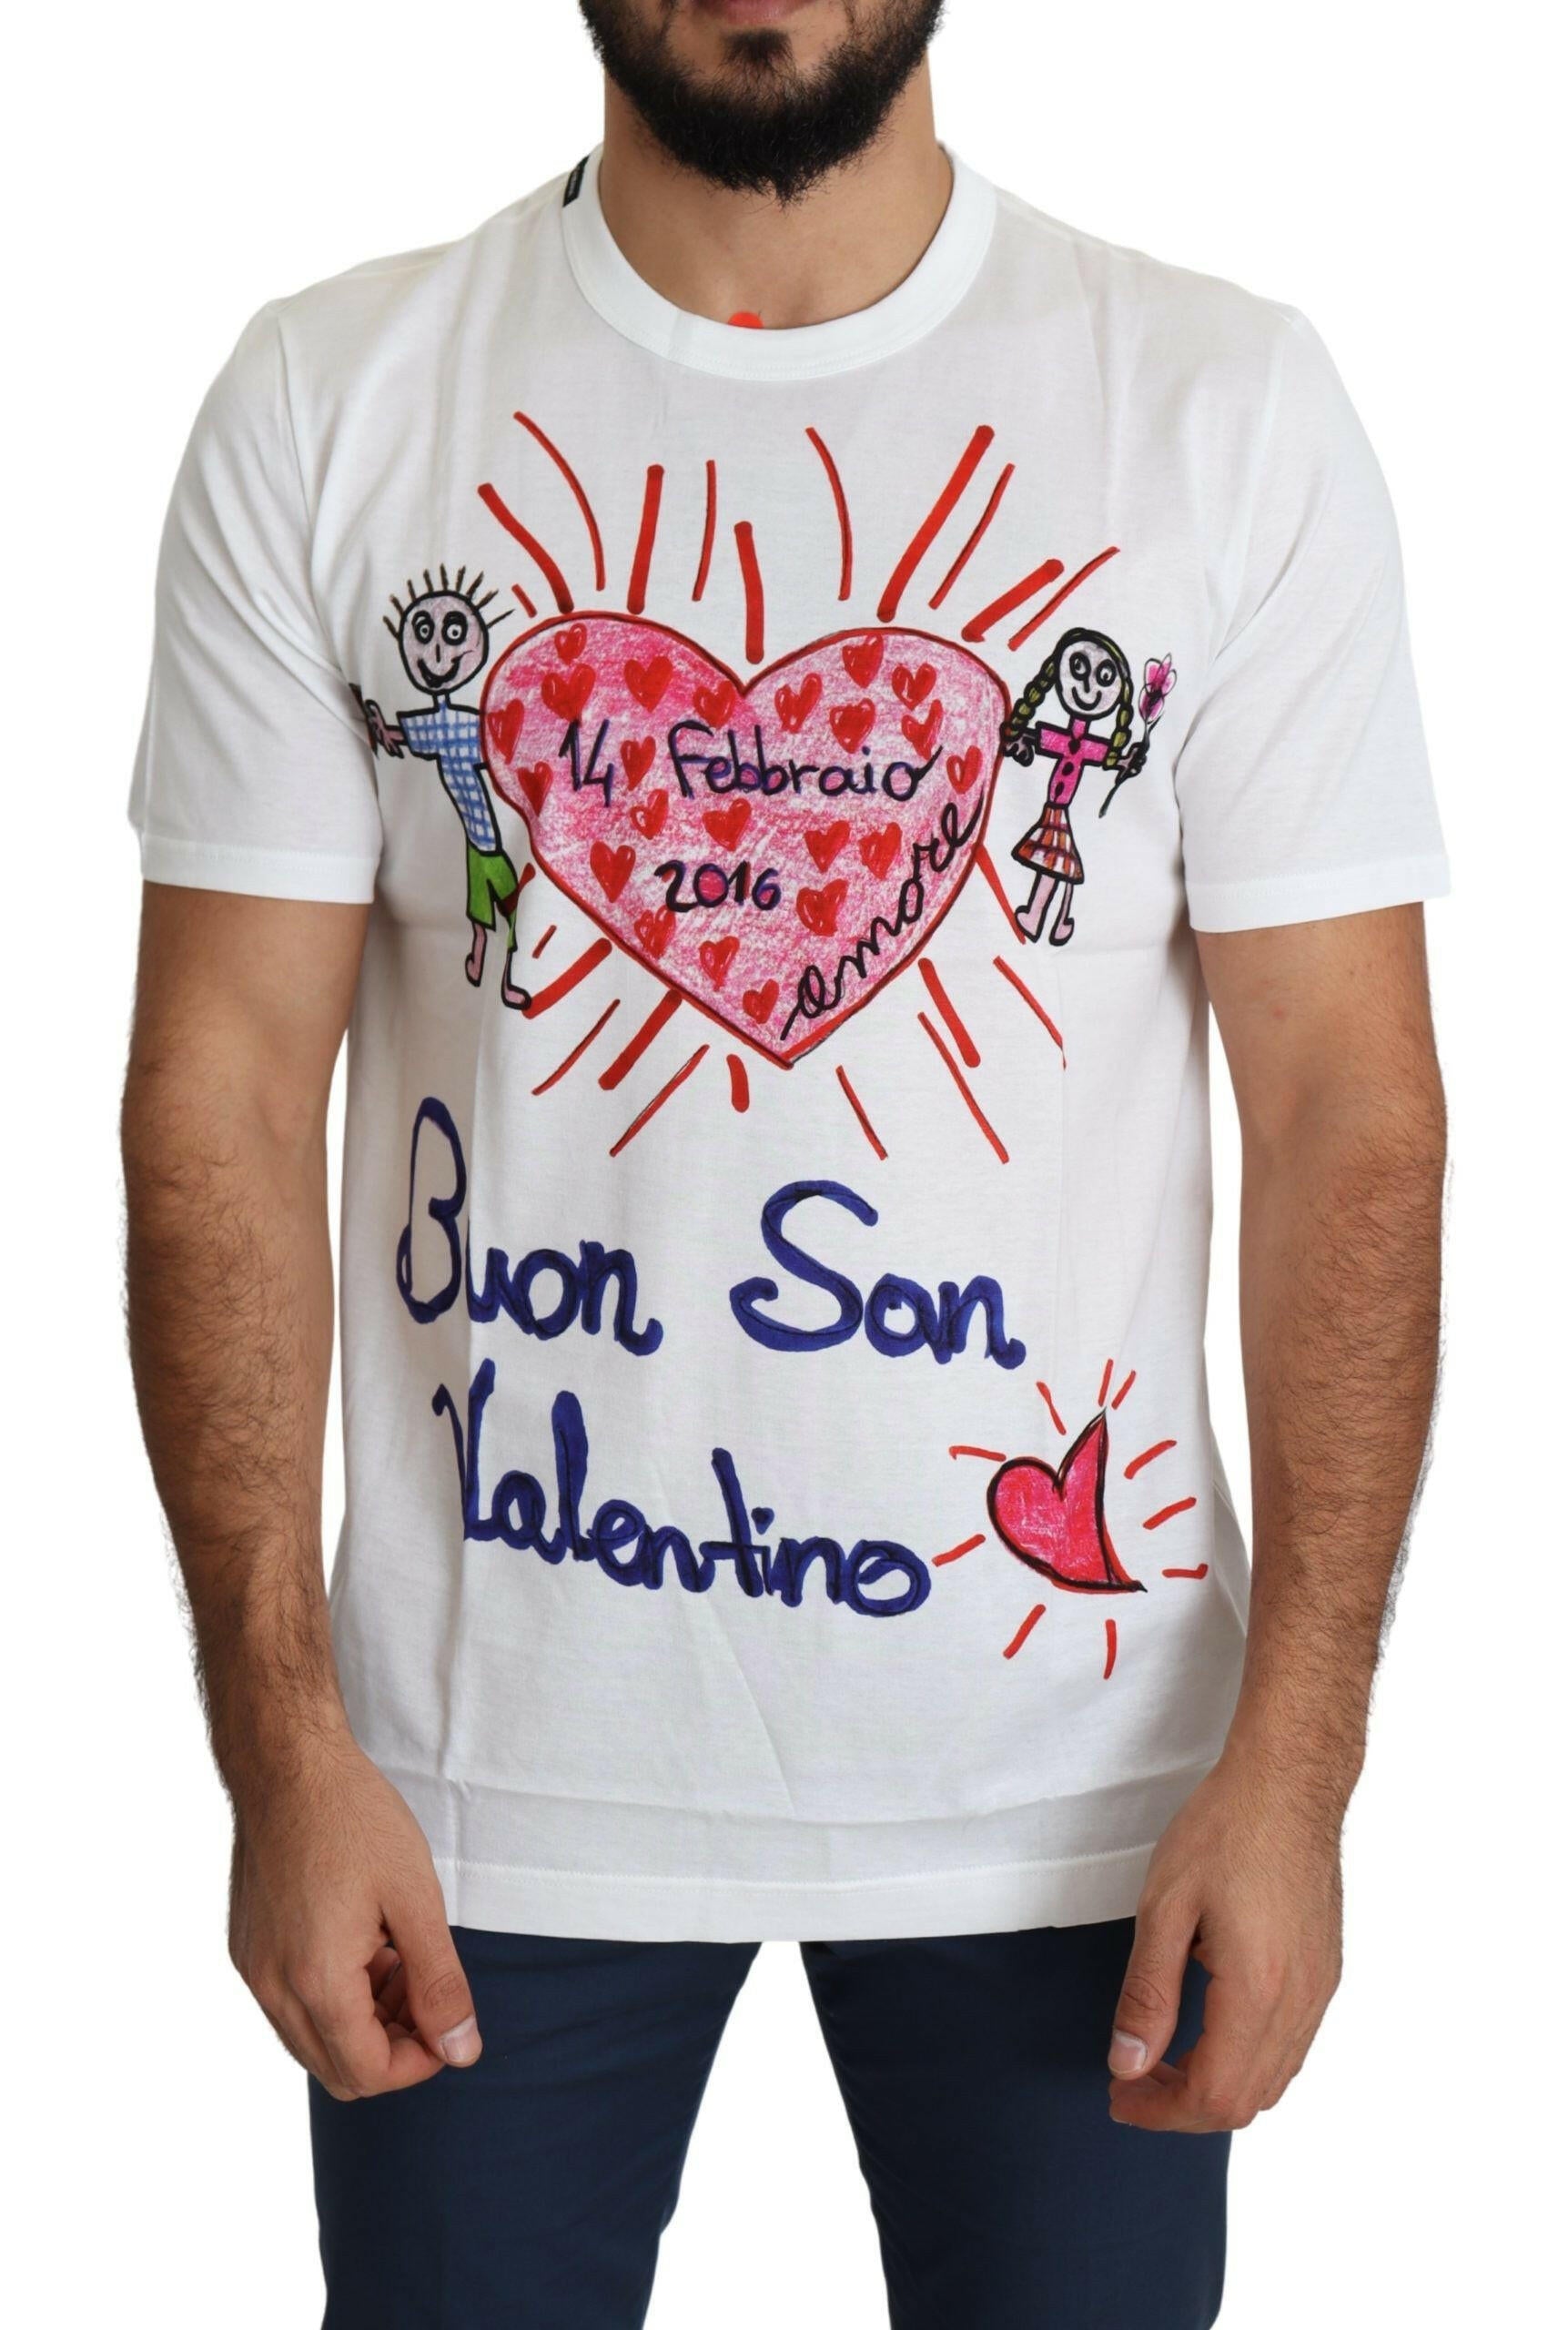 Dolce & Gabbana White Saint Valentine Hearts Print Men  T-shirt - GENUINE AUTHENTIC BRAND LLC  